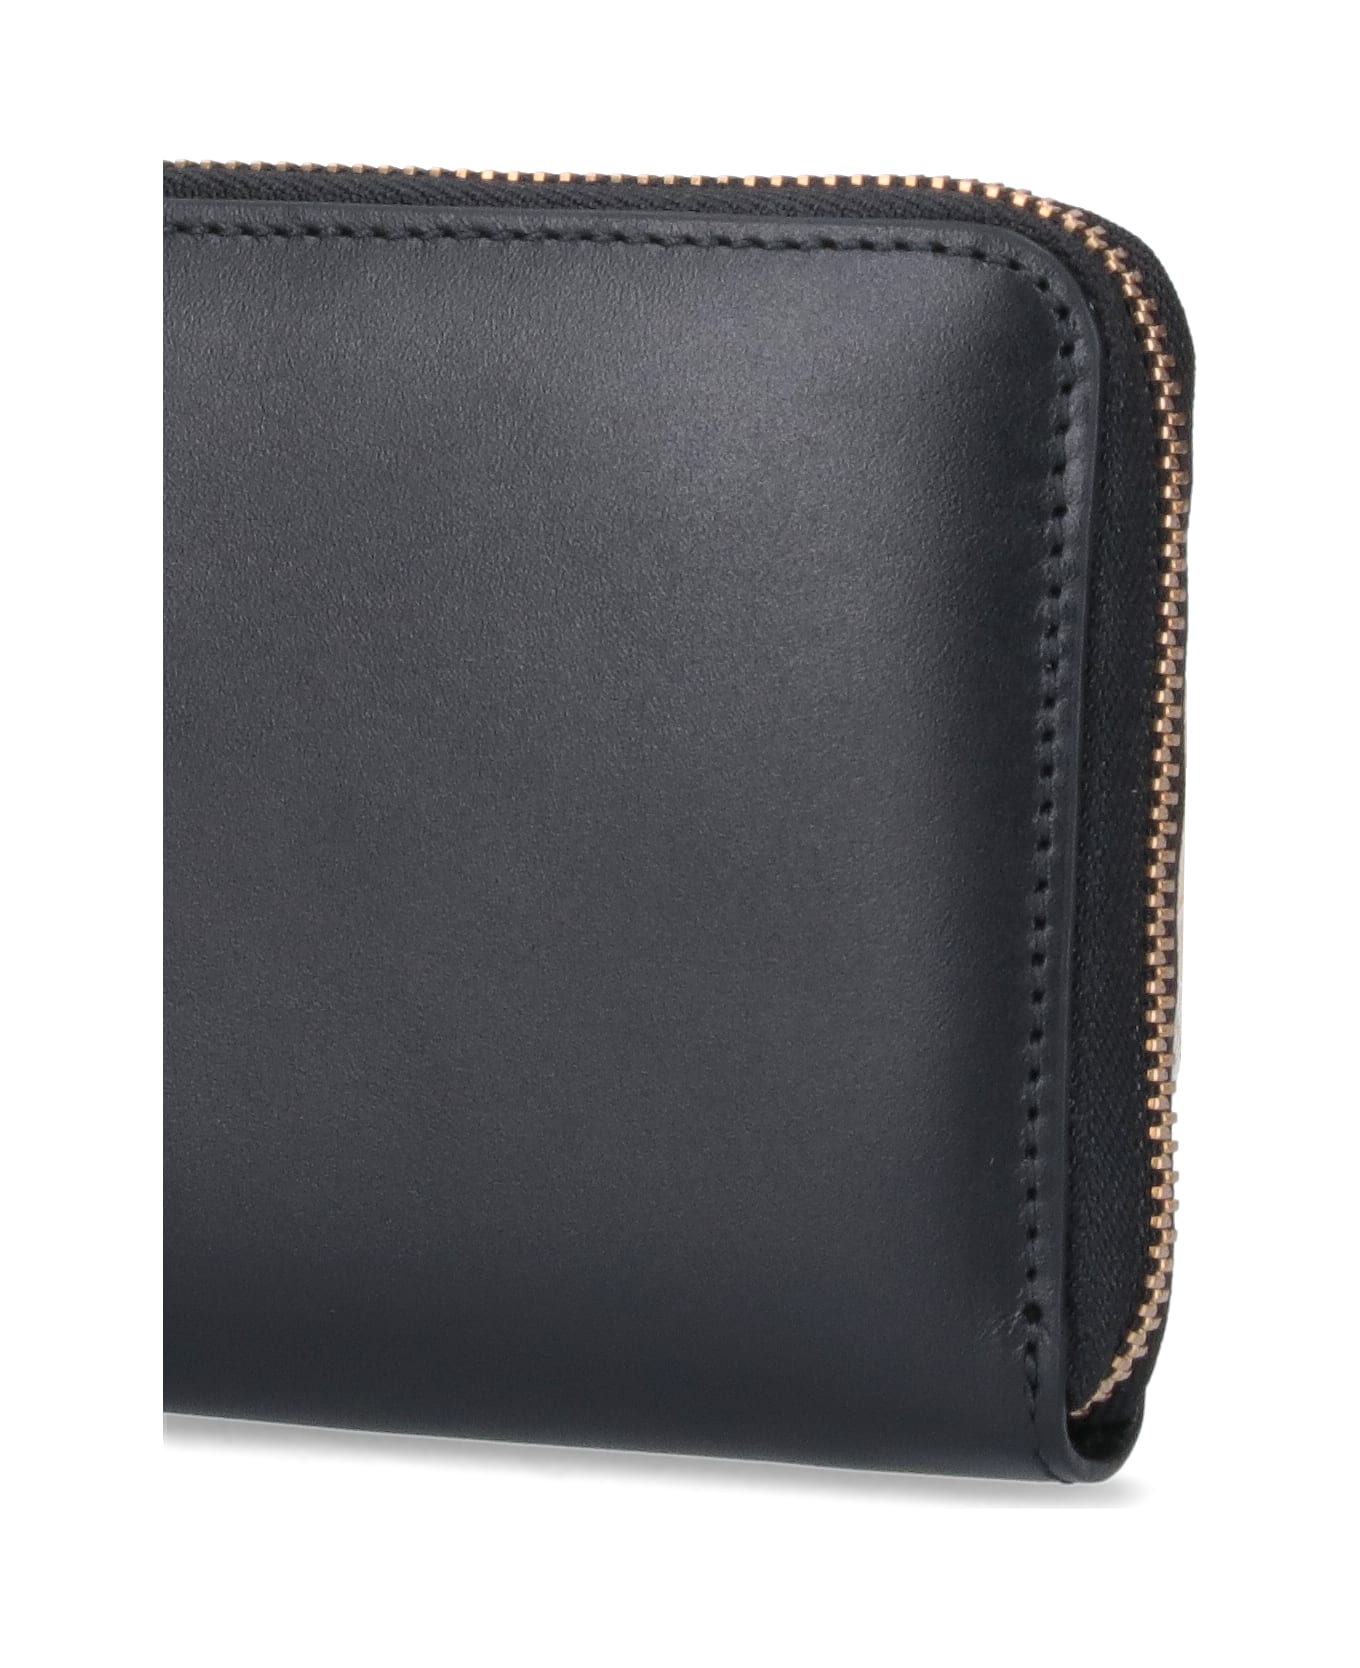 Comme des Garçons Wallet 'classic' Zip Wallet - Black 財布